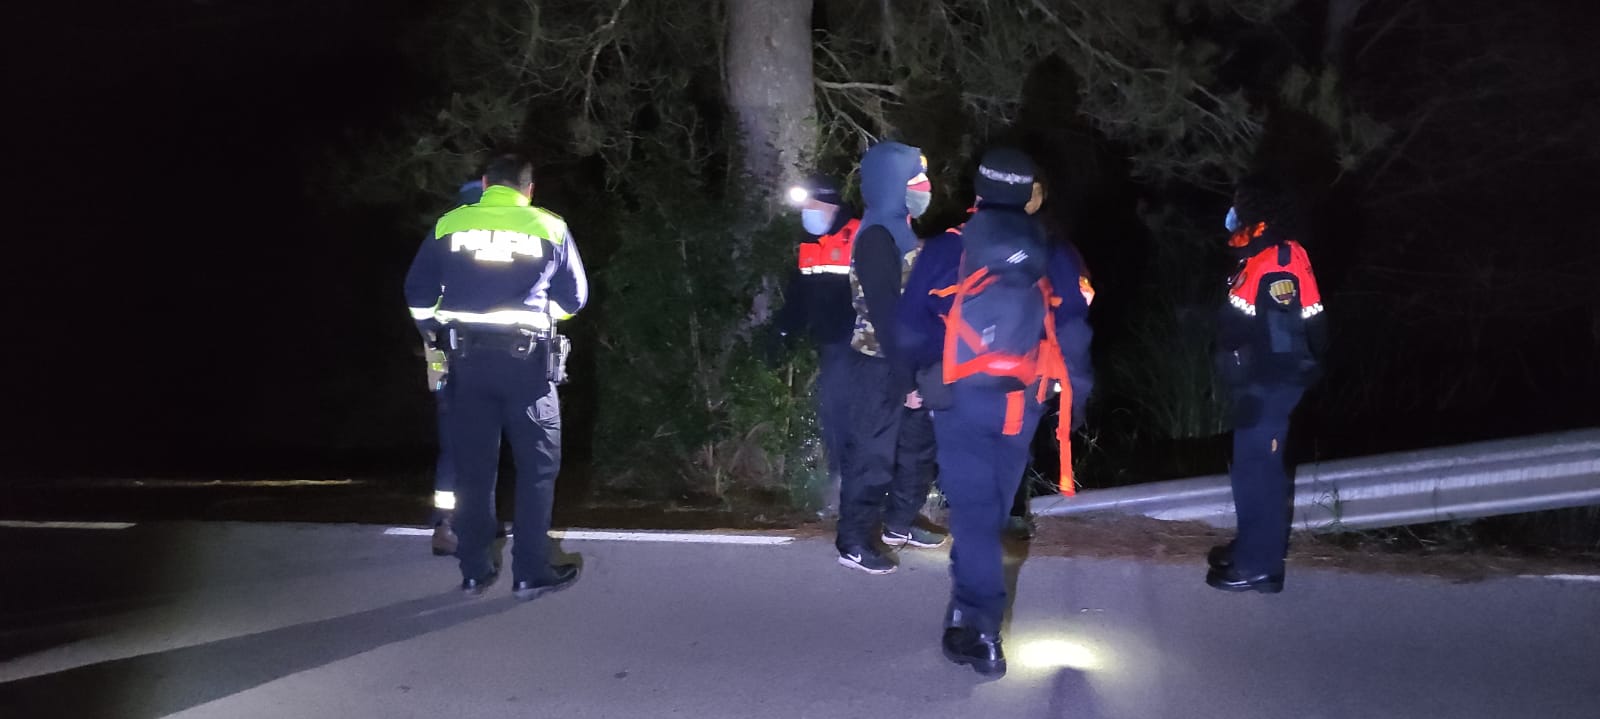 La Policia Local de Sant Andreu de la Barca localitza dos joves perduts a la muntanya